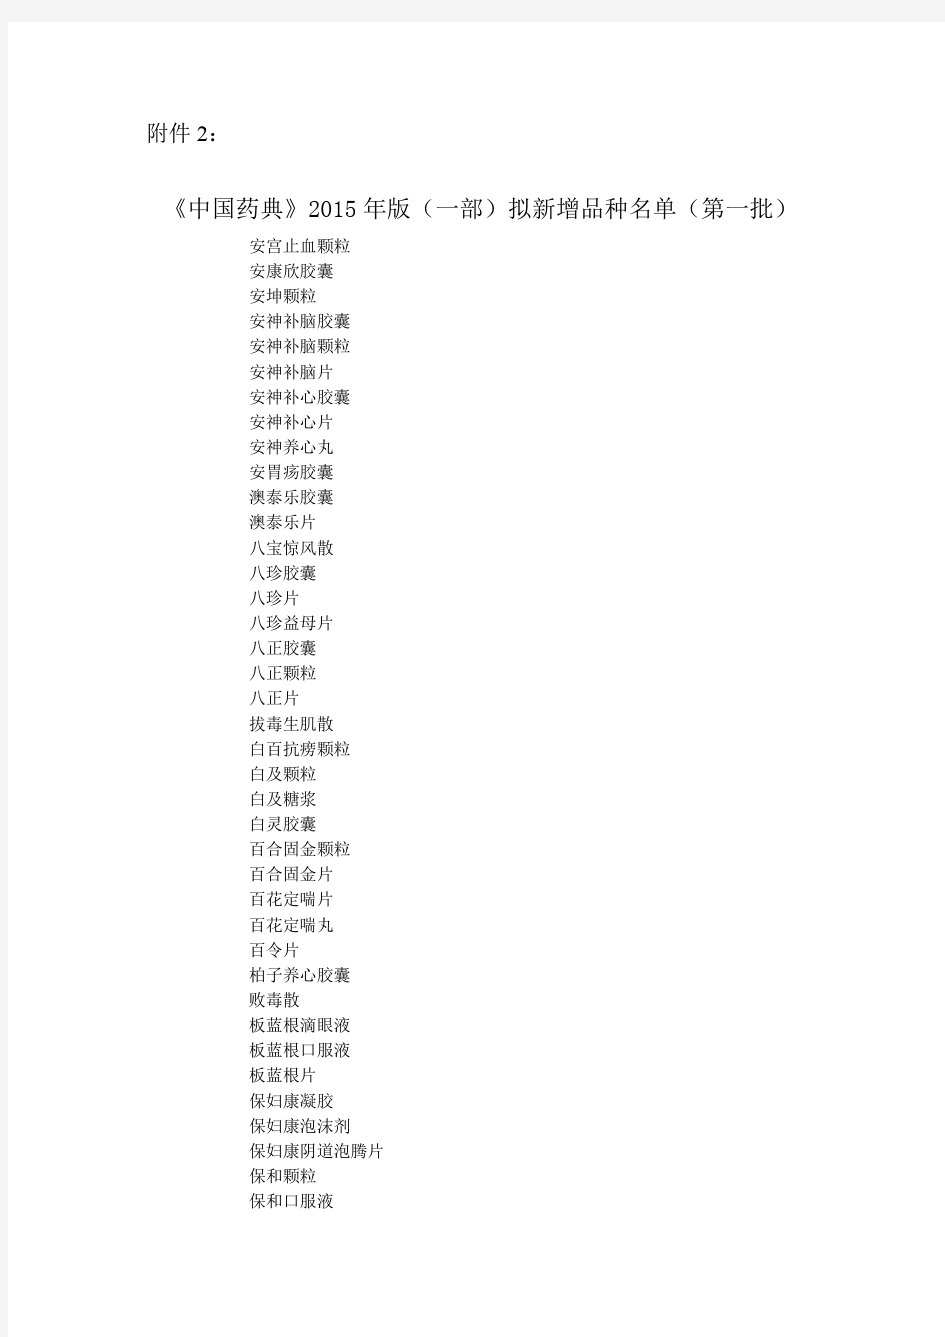 中国药典2015年版拟新增品种名单